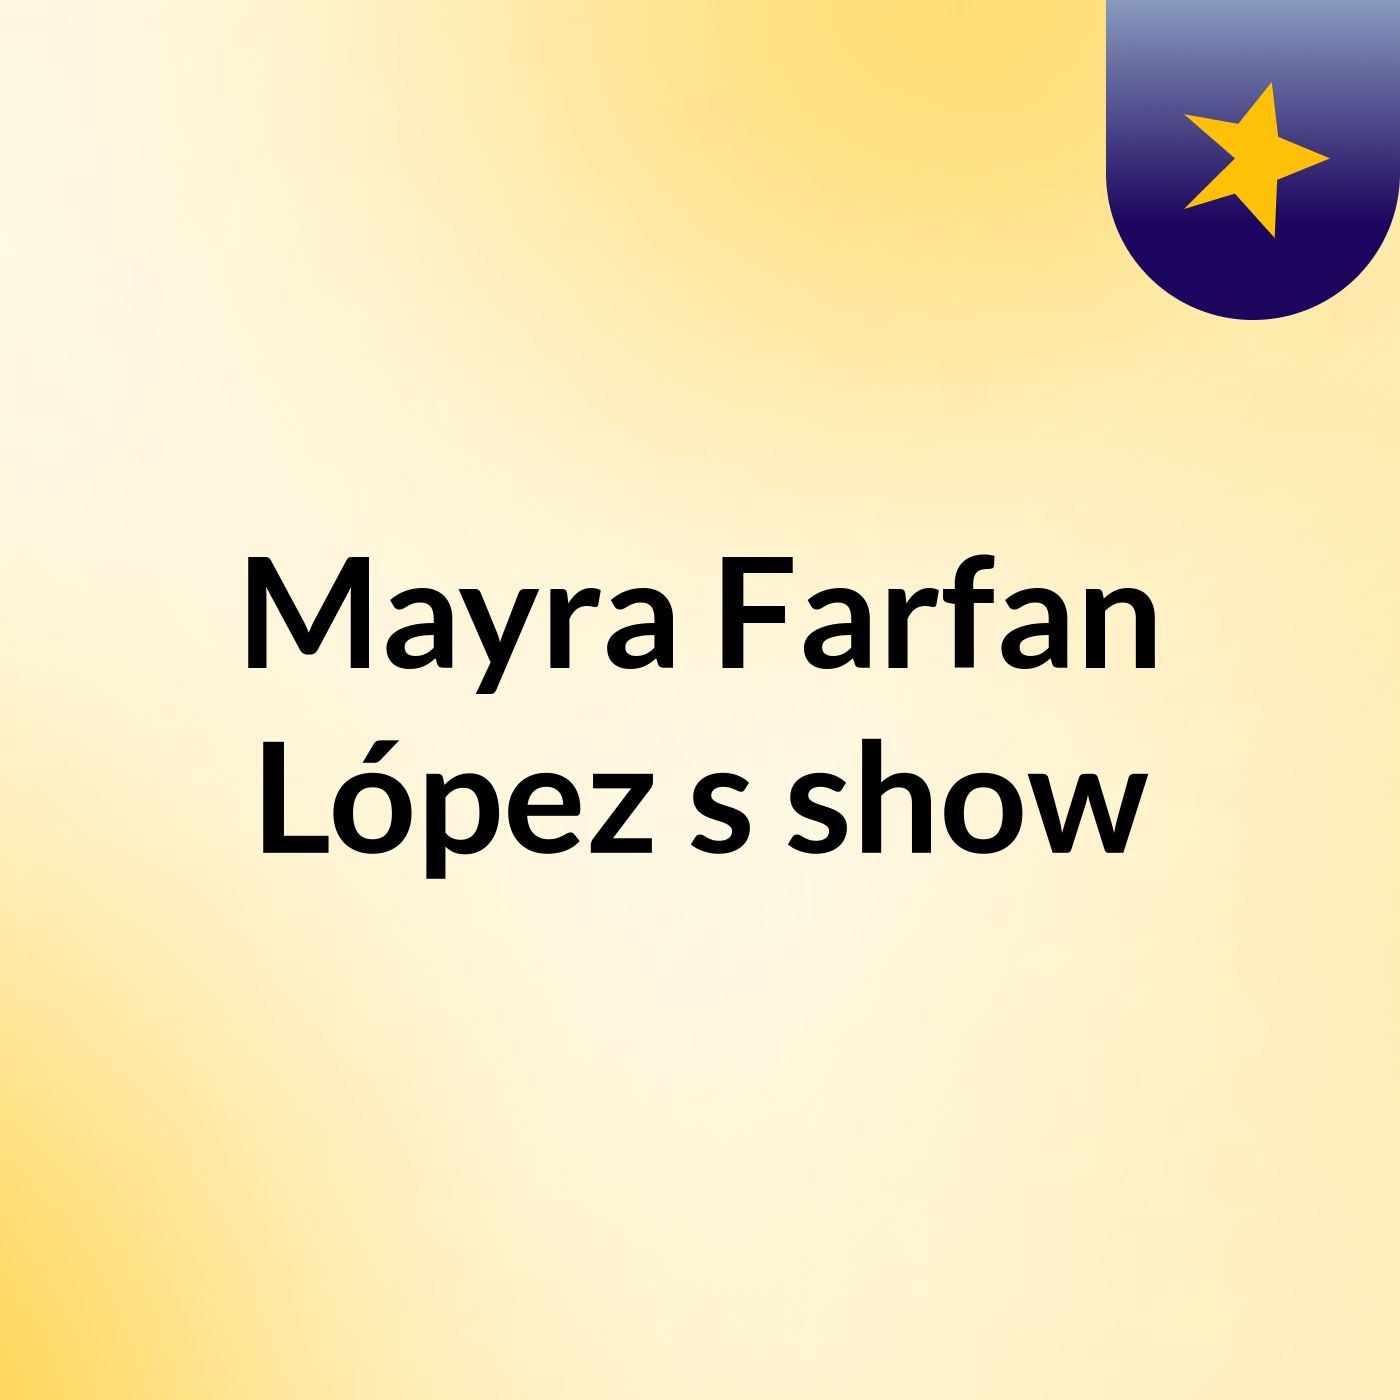 Mayra Farfan López's show